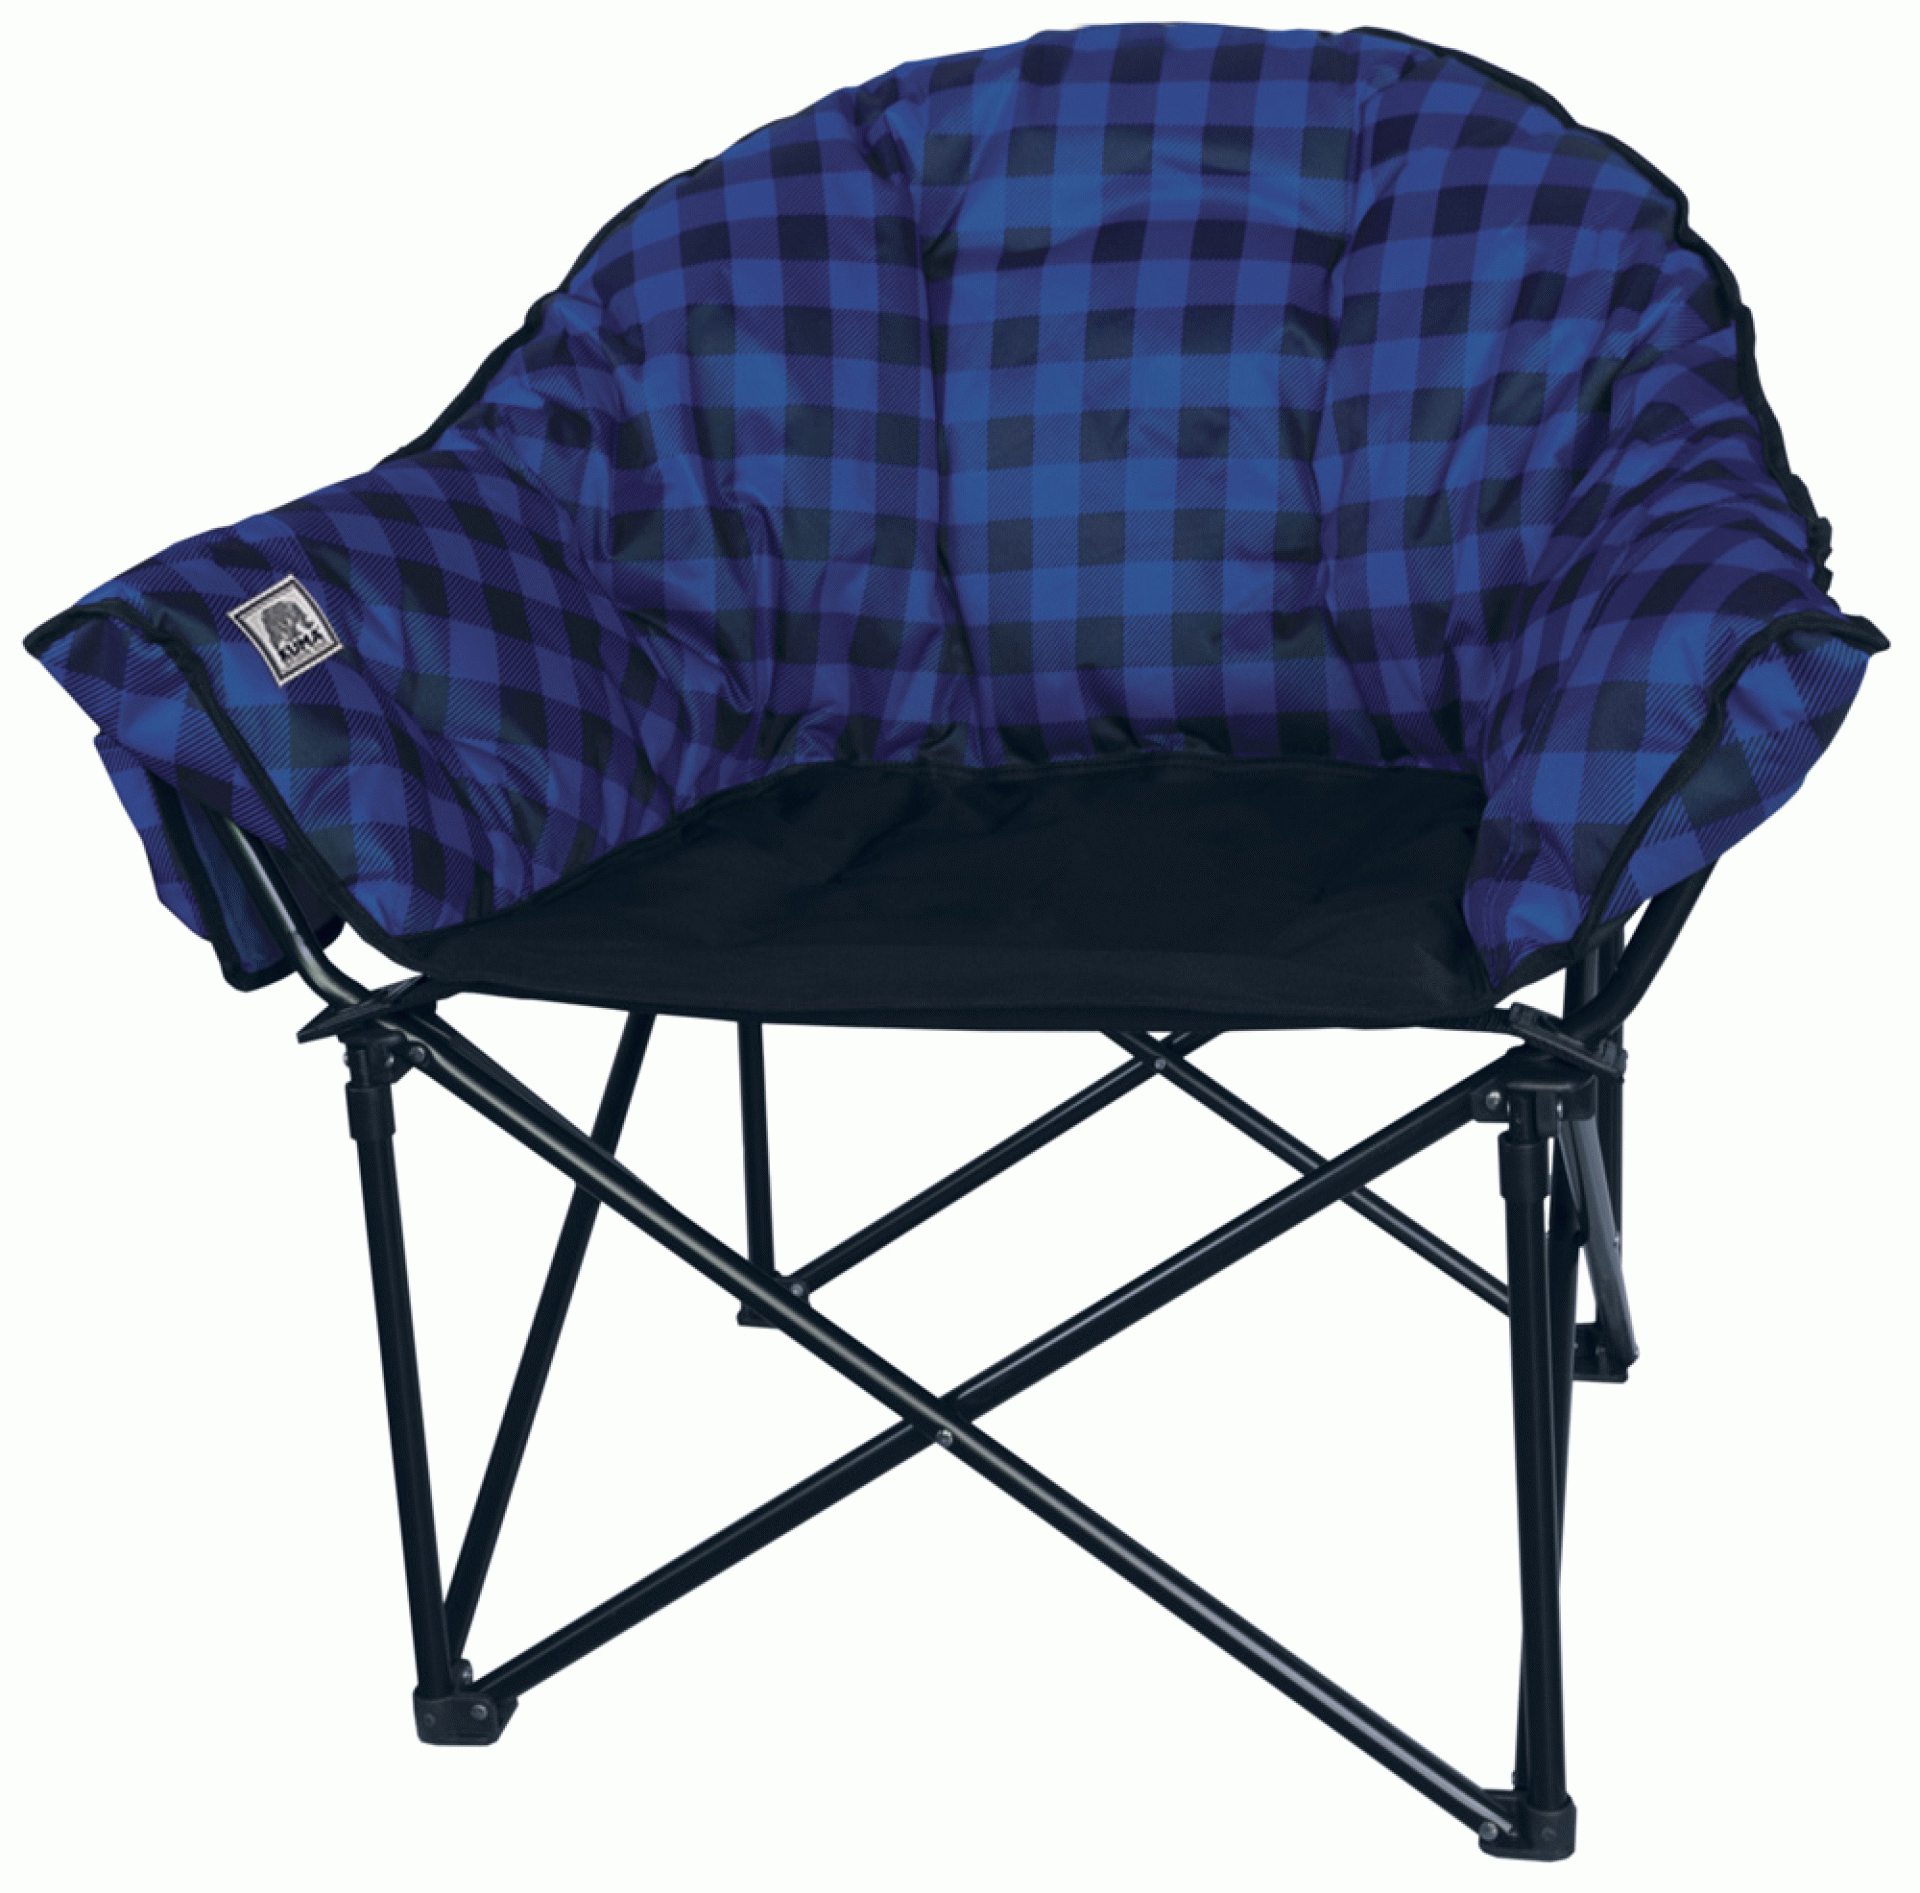 KUMA OUTDOOR GEAR | 433-KM-LBCH-BLBP | Lazy Bear Chair Blue Plaid